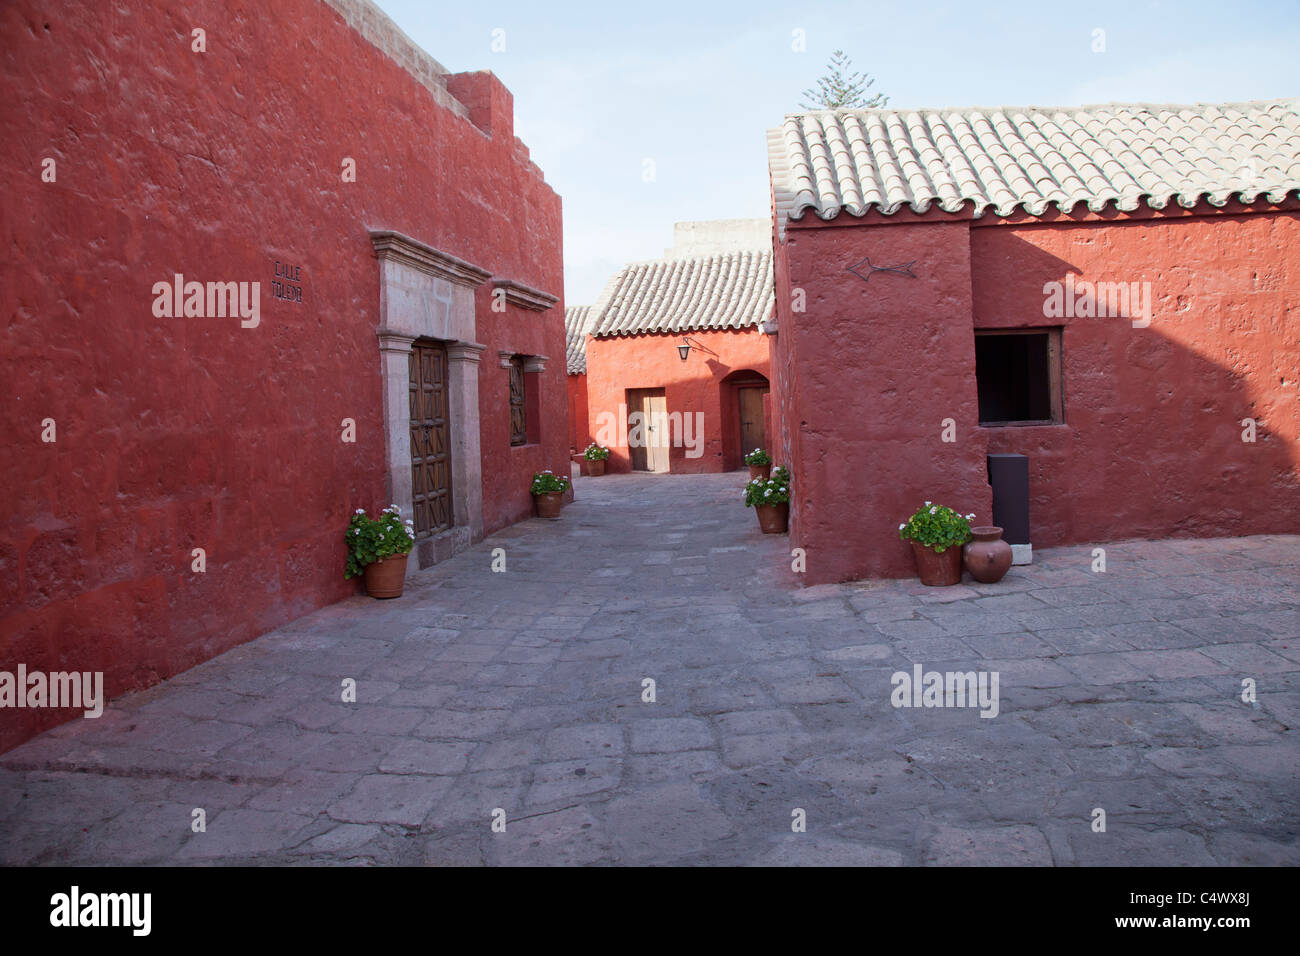 Les murs en terre cuite du couvent et monastère de Santa Catalina, Arequipa, Pérou Banque D'Images